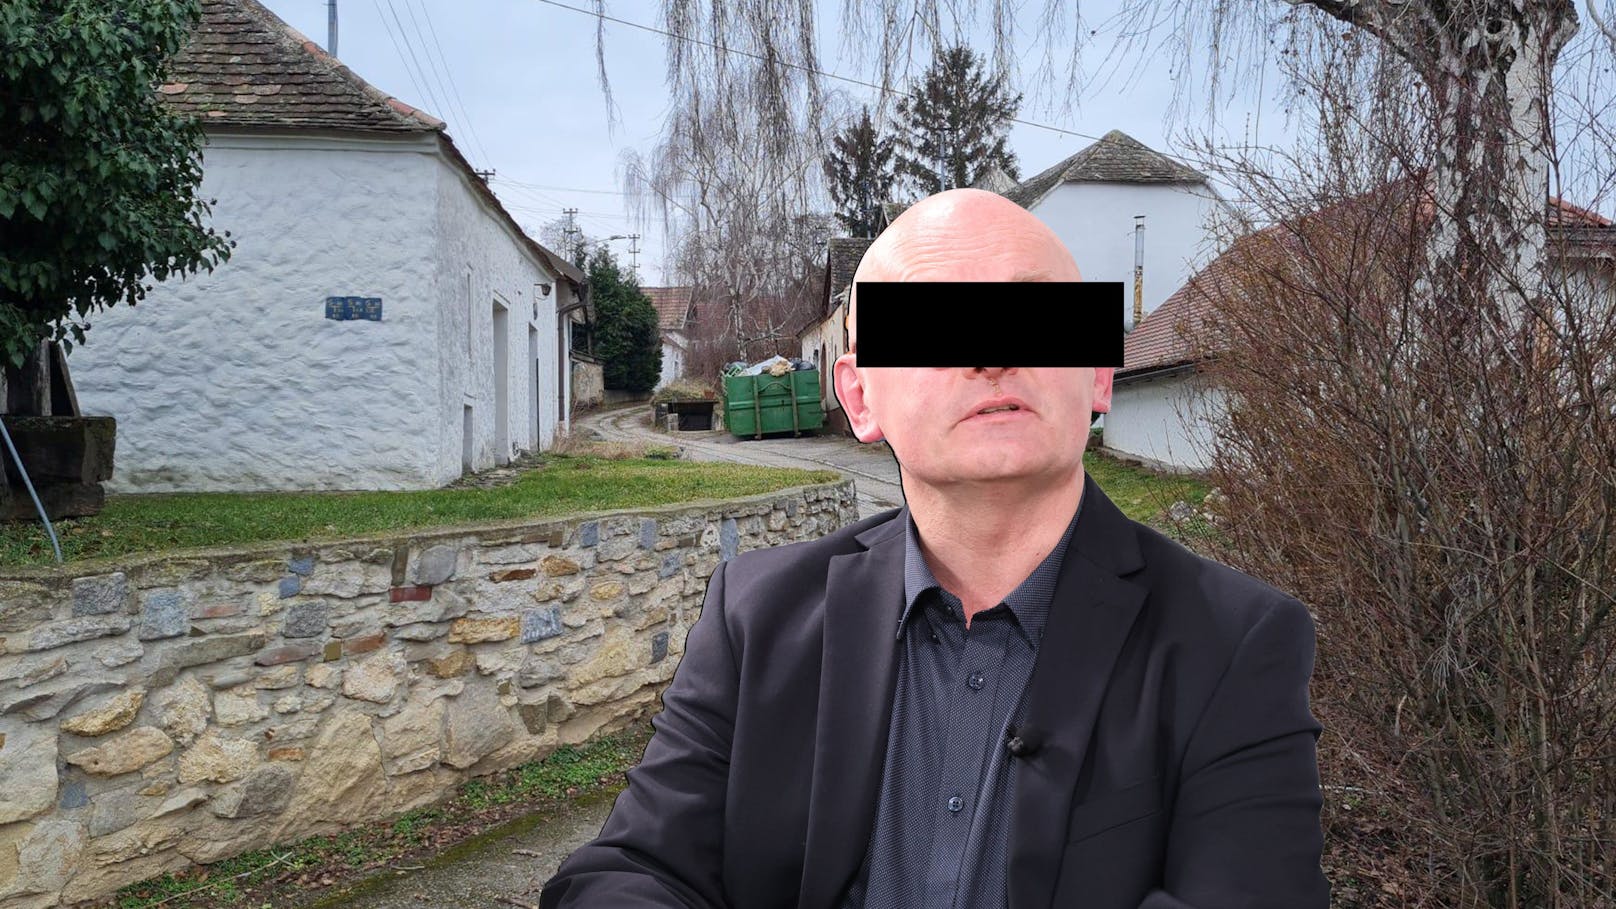 EU-Haftbefehl – "Kellervater" tappte in Polizeifalle